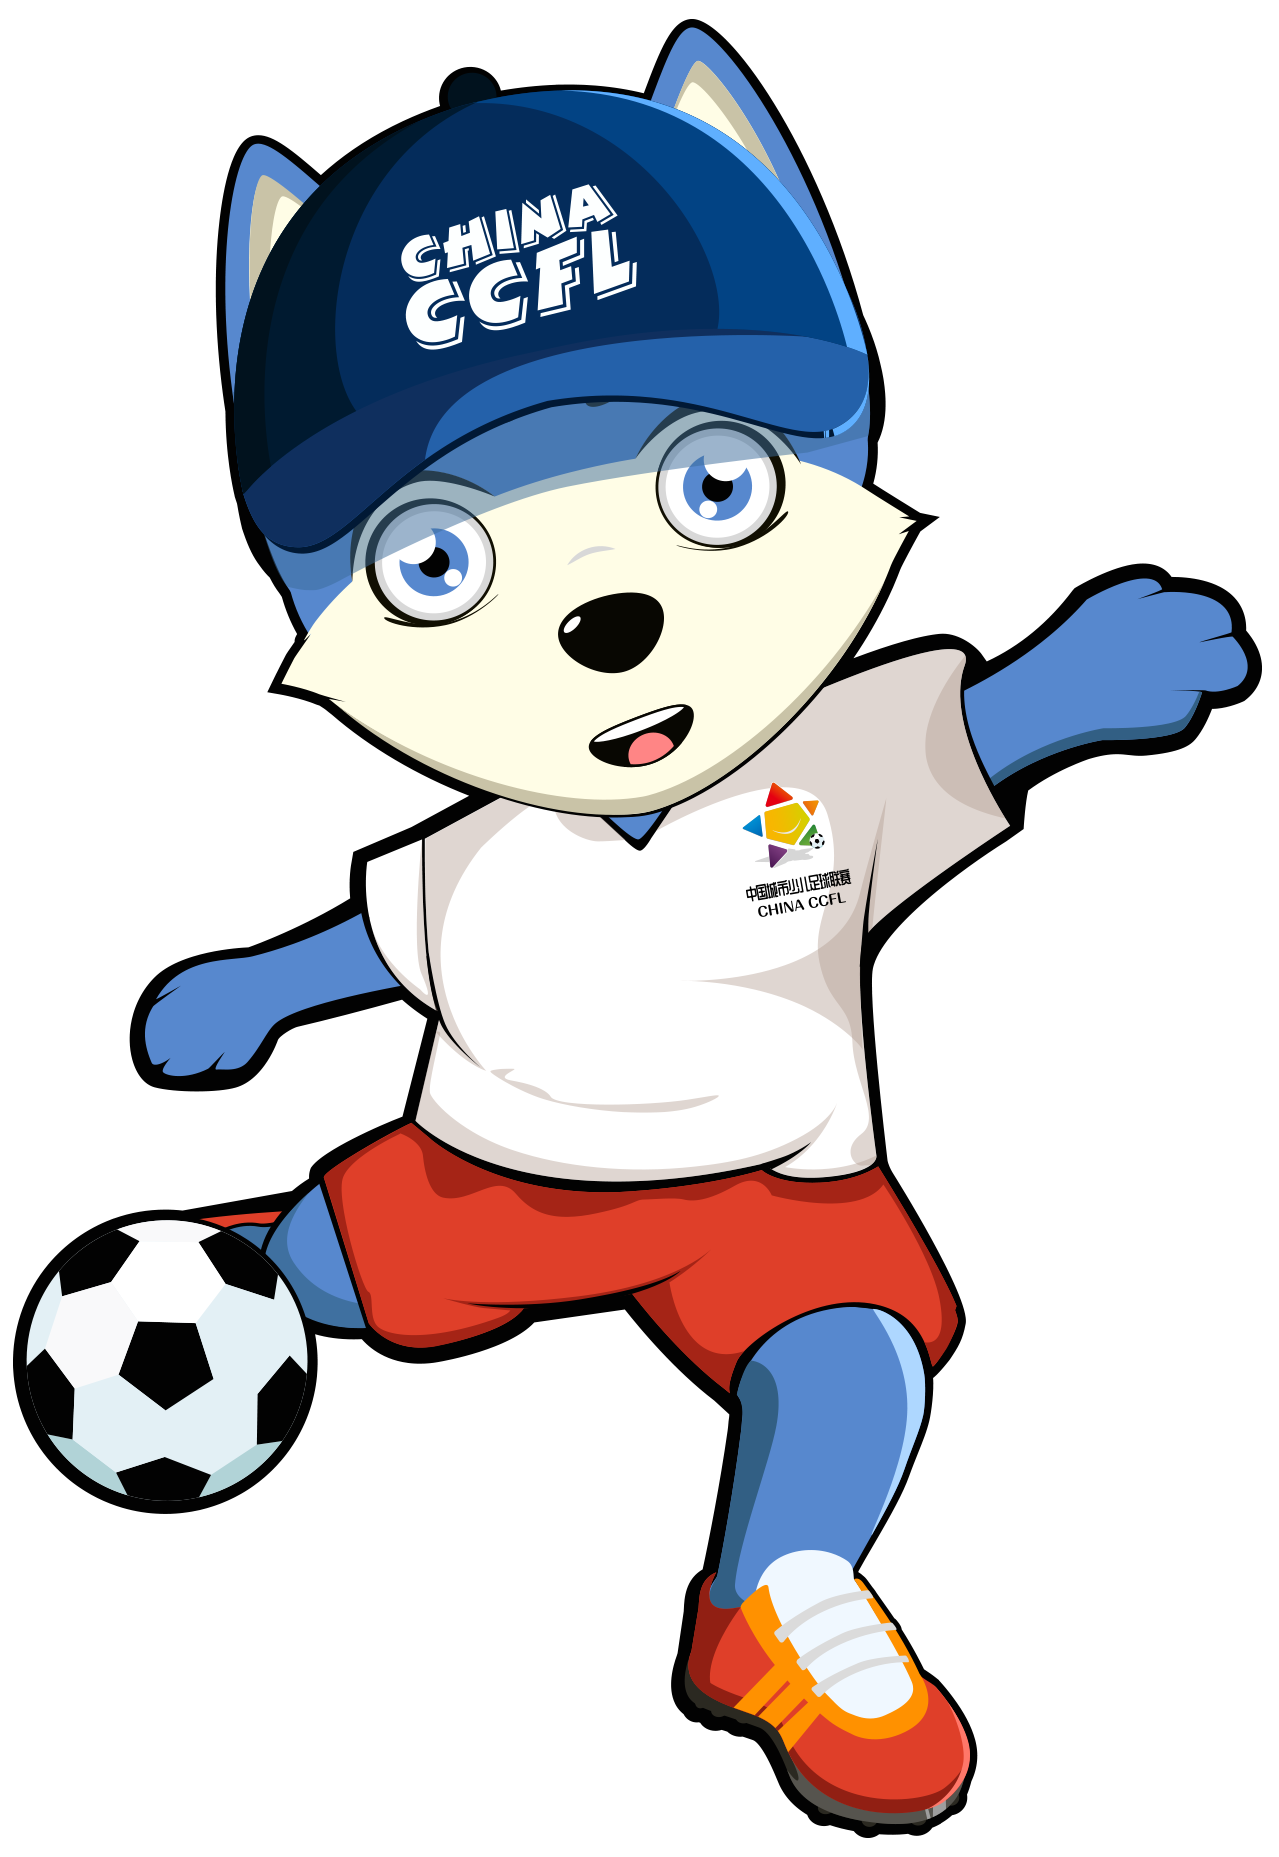 中国城市少儿足球联赛发布新logo,吉祥物 与云南开远市达成战略合作